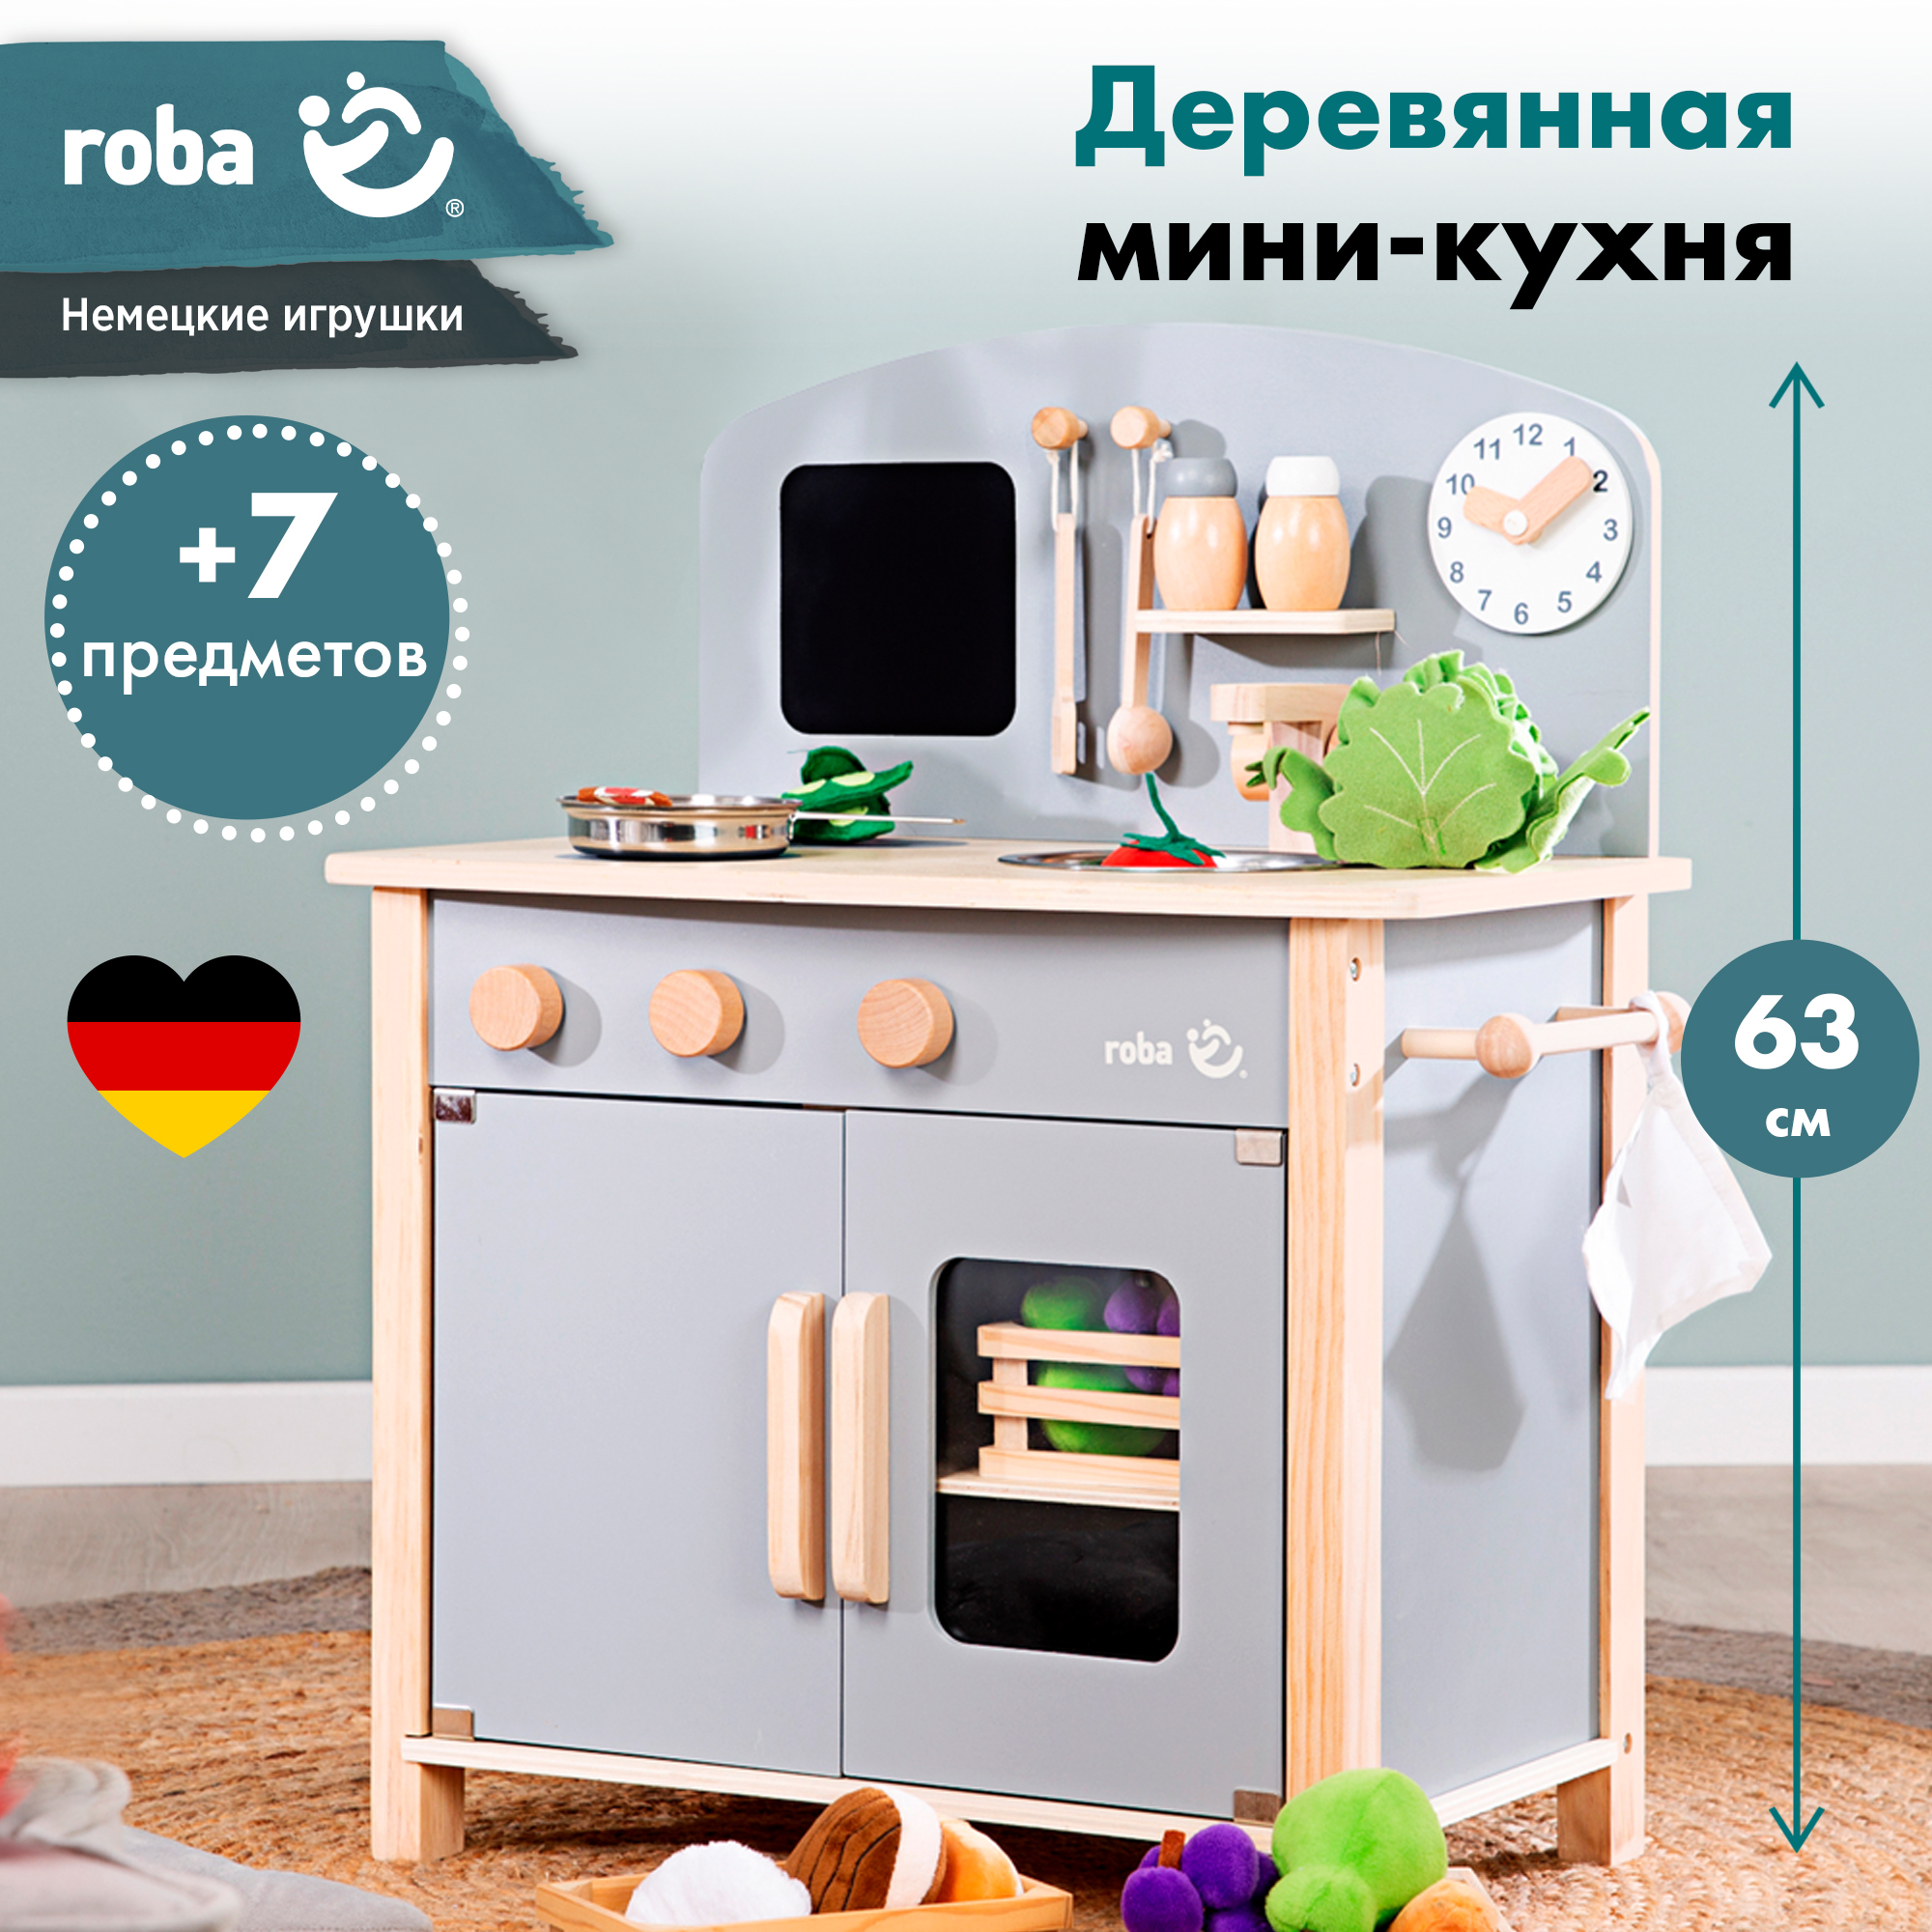 Кухня детская игровая Roba c 2 конфорками, раковиной, краном и аксессуарами, серый roba детская игровая кухня 480227